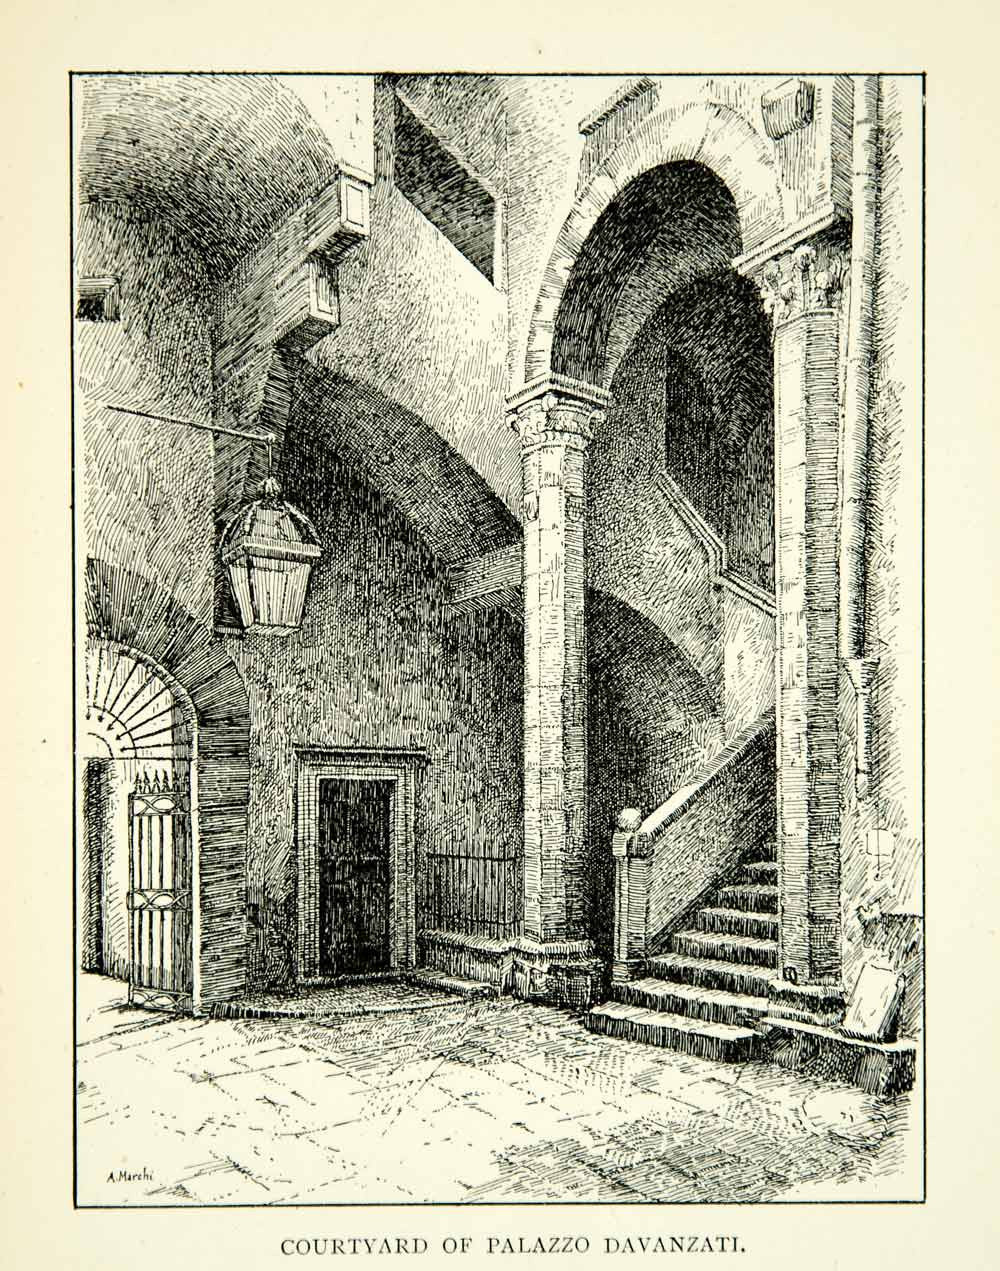 1905 Print Palazzo Davanzati Palace Courtyard Florentine House Museum XEEA1